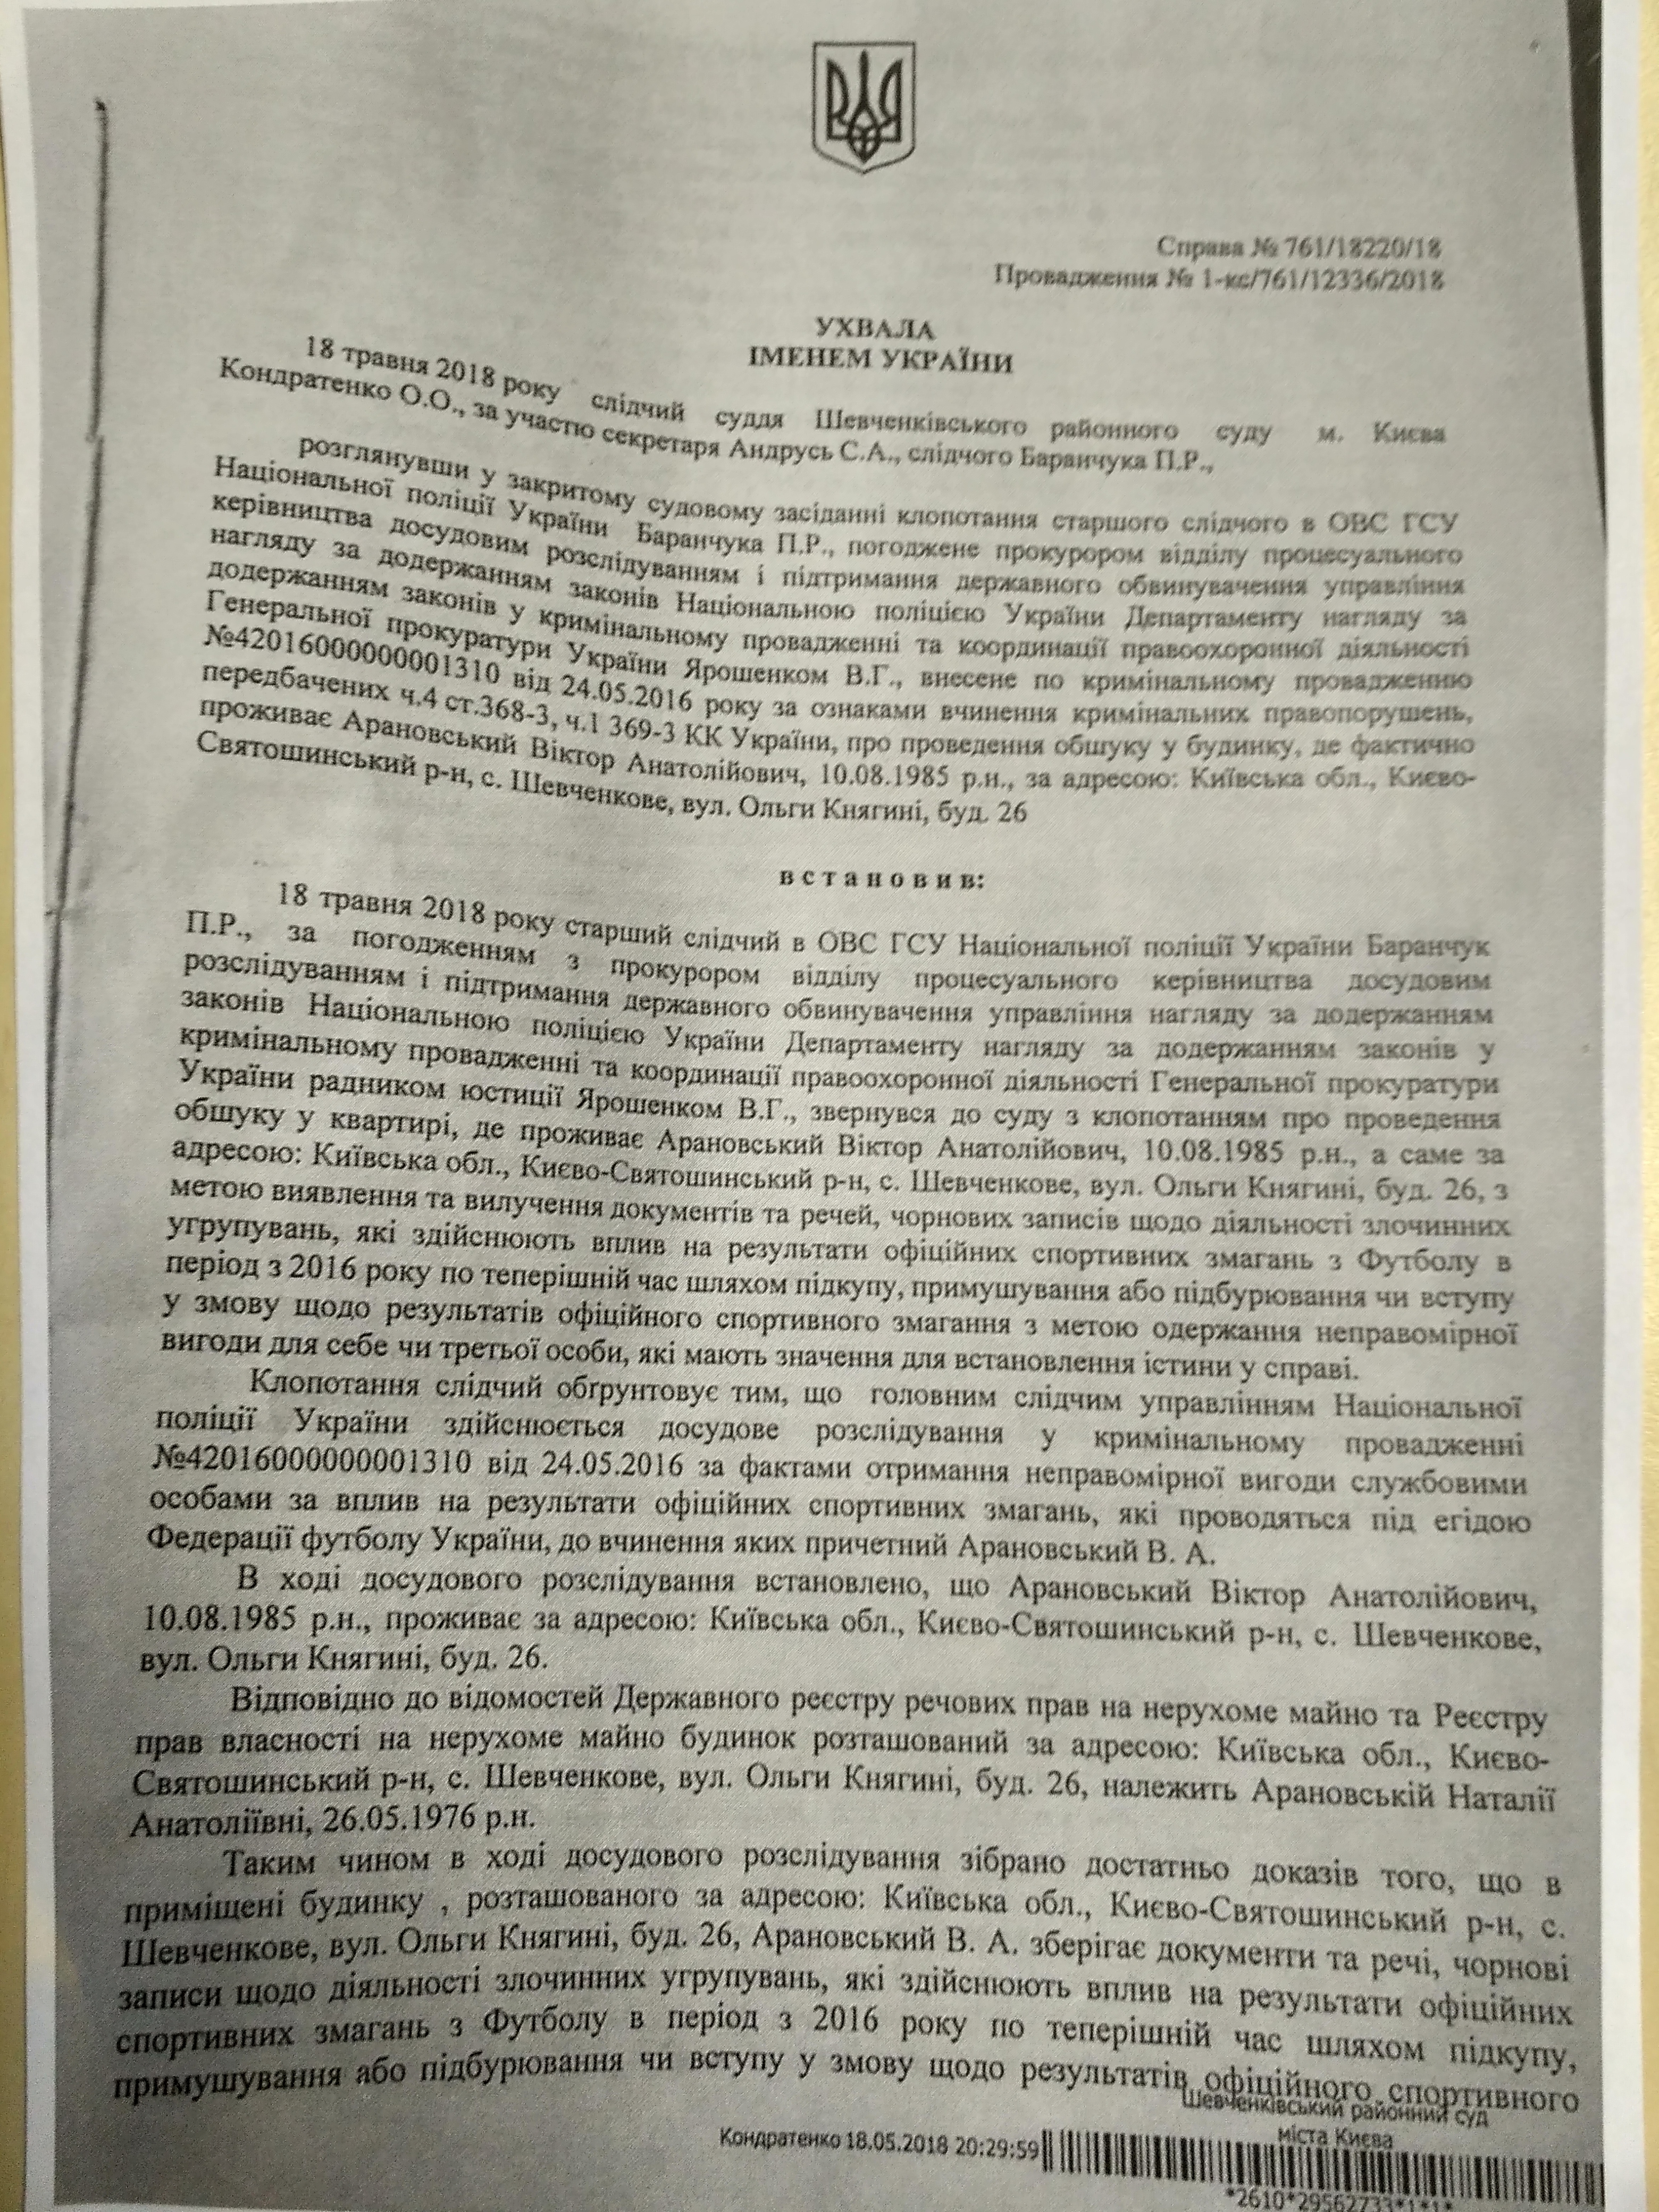 ФФУ спростувала підозру щодо Євгена Арановського - изображение 1